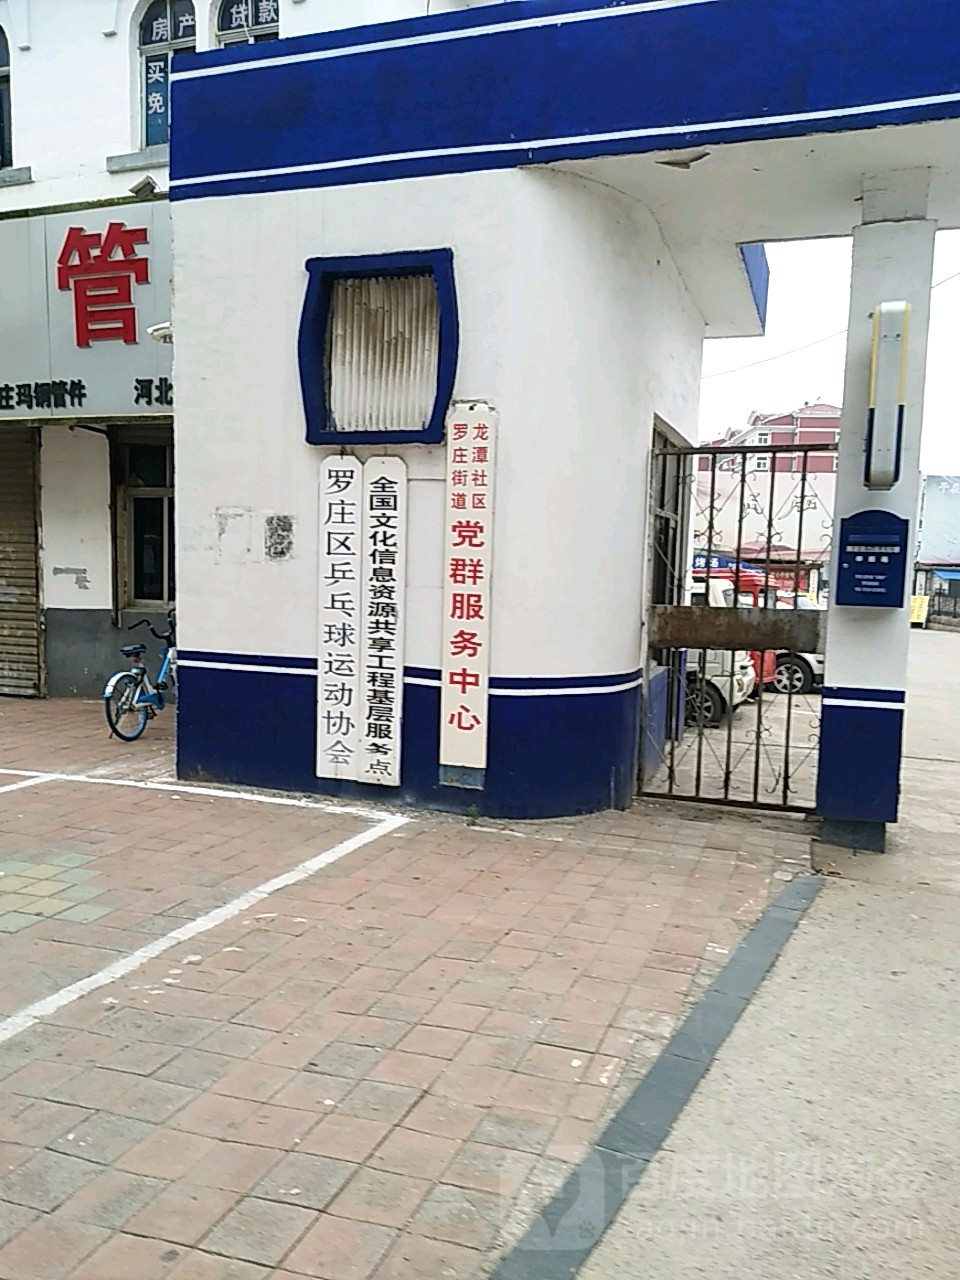 罗庄区乒乓球运动协会